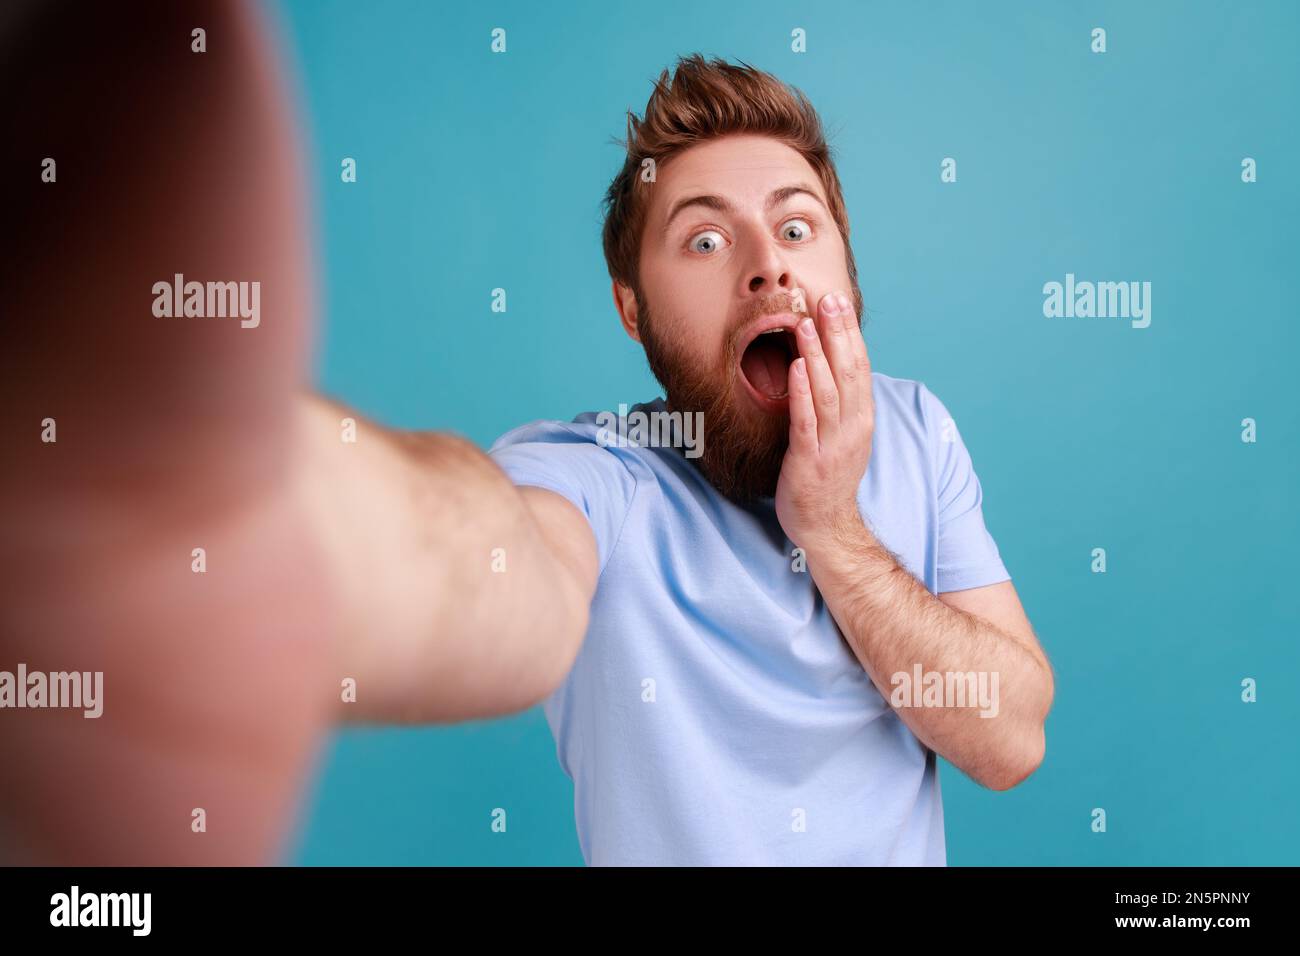 Porträt eines bärtigen Mannes, der Selfie macht oder Videoanrufe macht, mit schockiertem Gesichtsausdruck in die Kamera schaut, Blickwinkel des Fotos. Innenstudio, isoliert auf blauem Hintergrund. Stockfoto